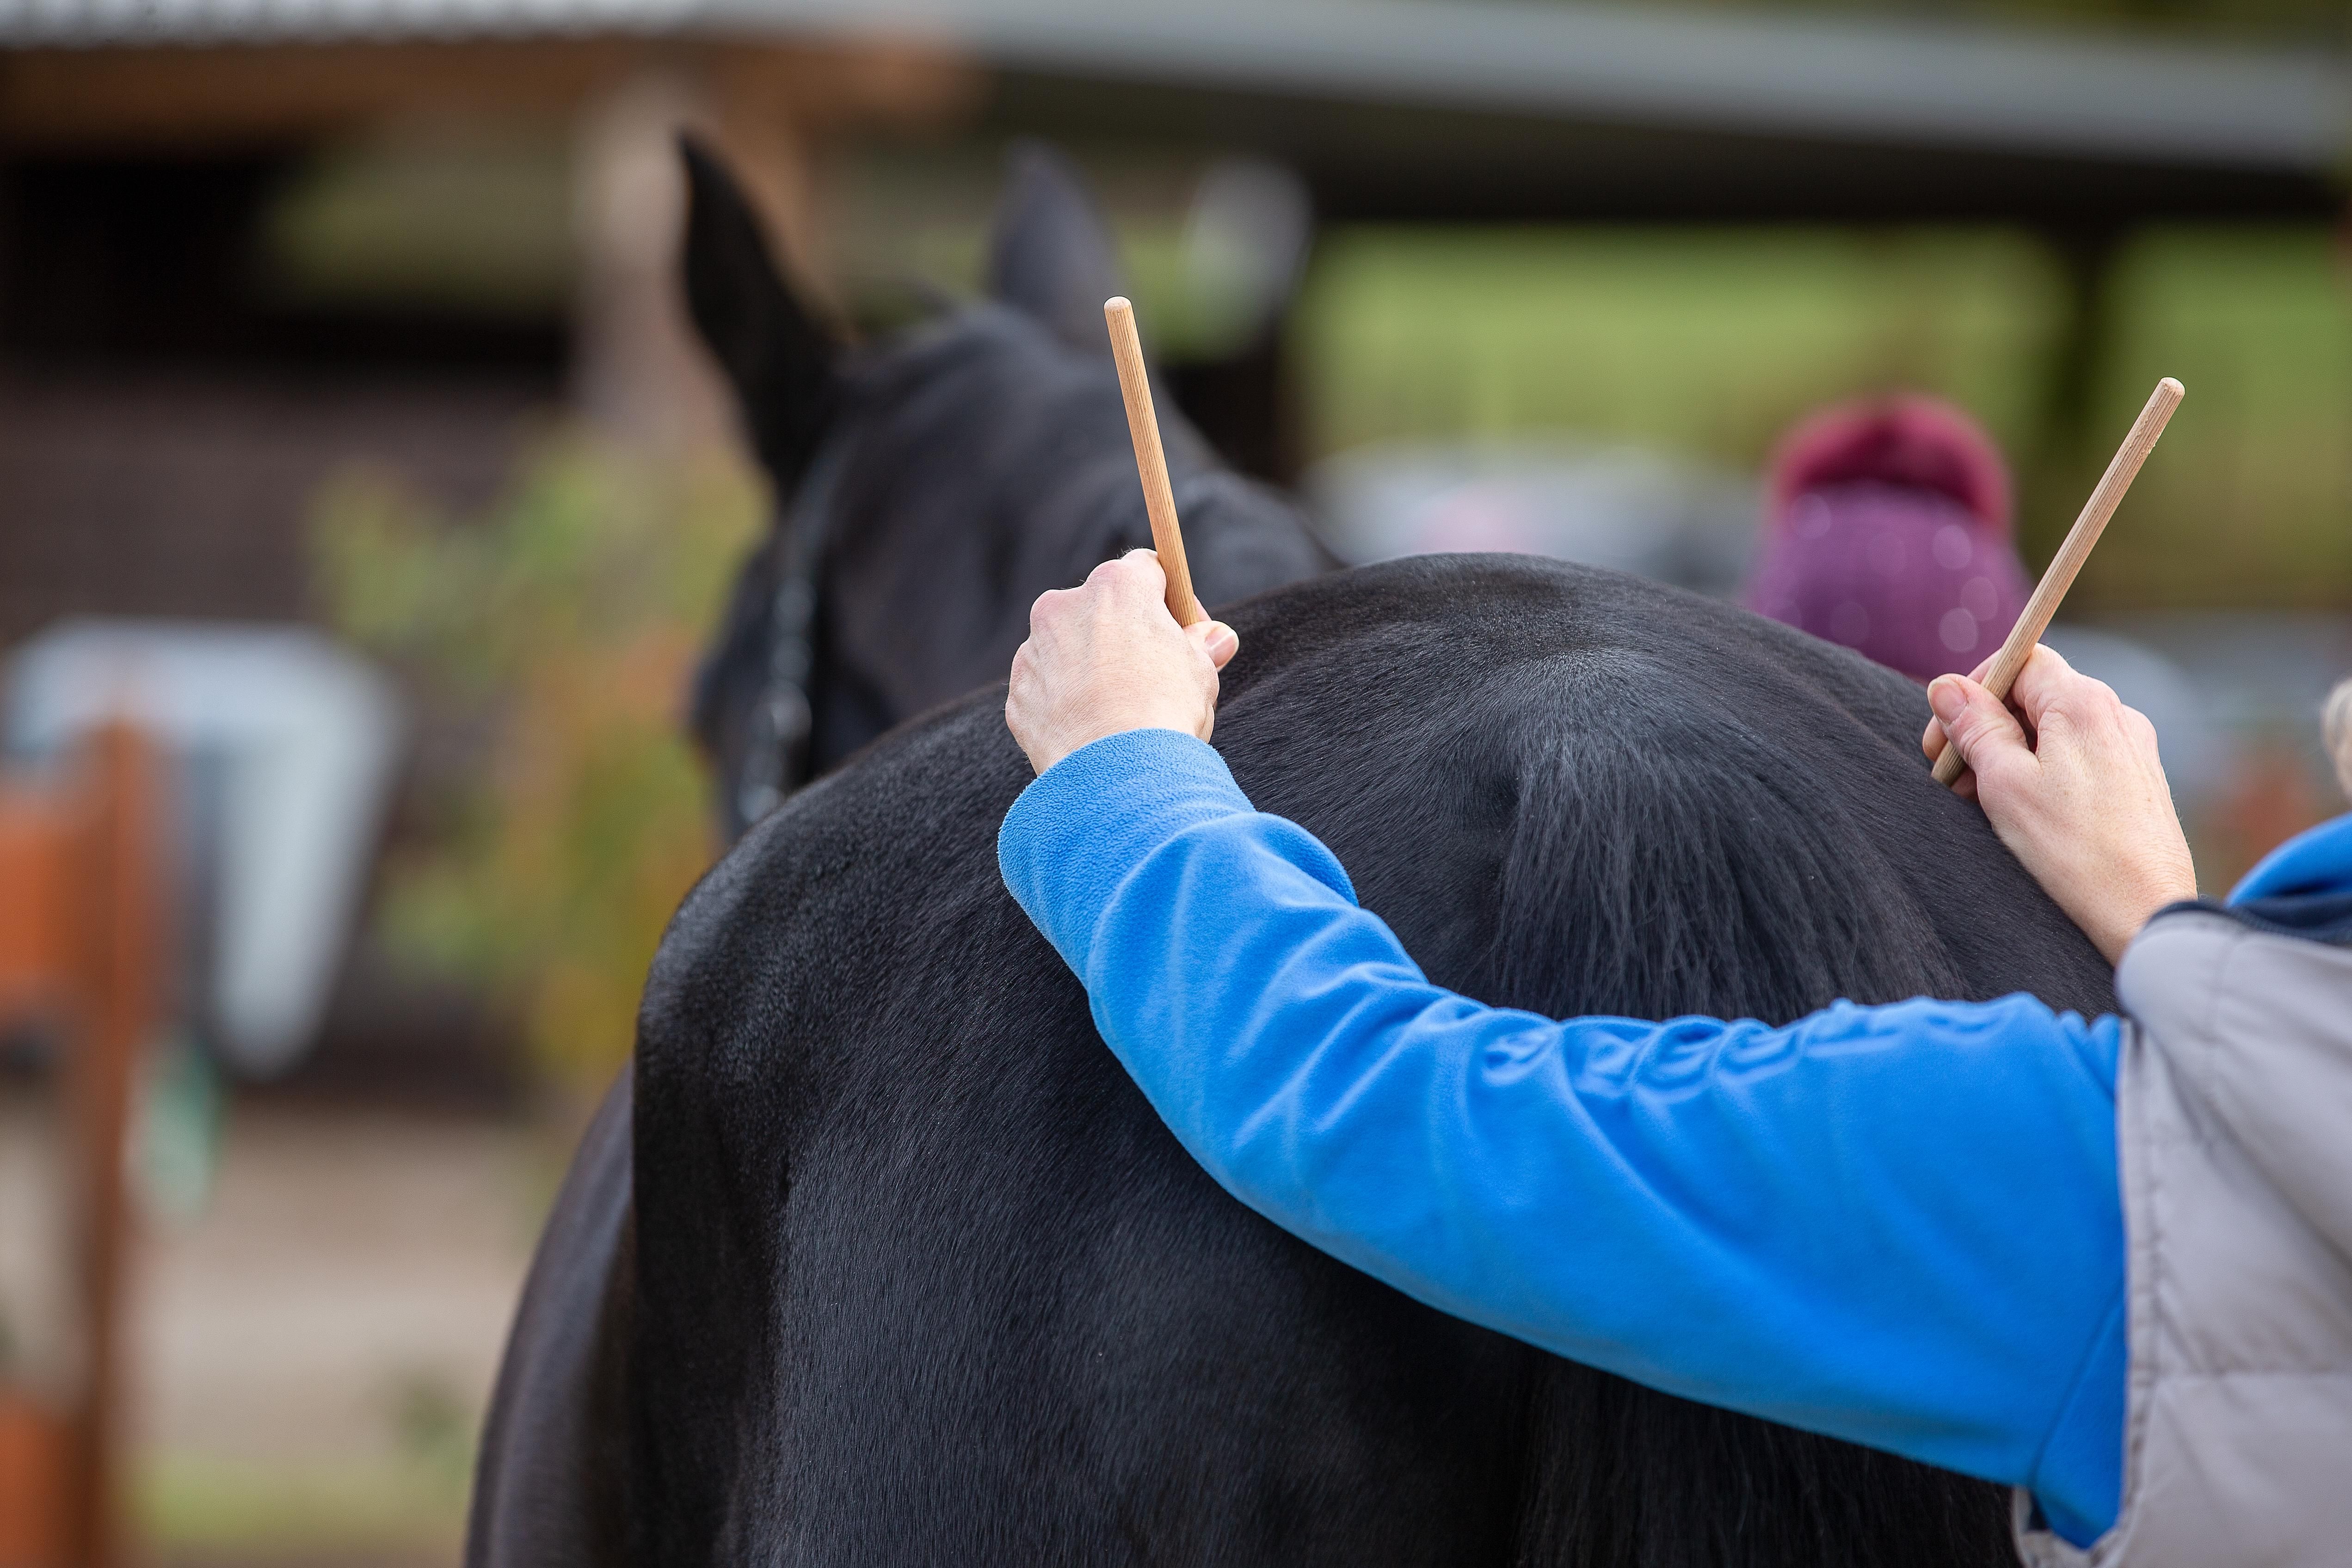 Állatorvos vizsgálja egy ló csontkopását